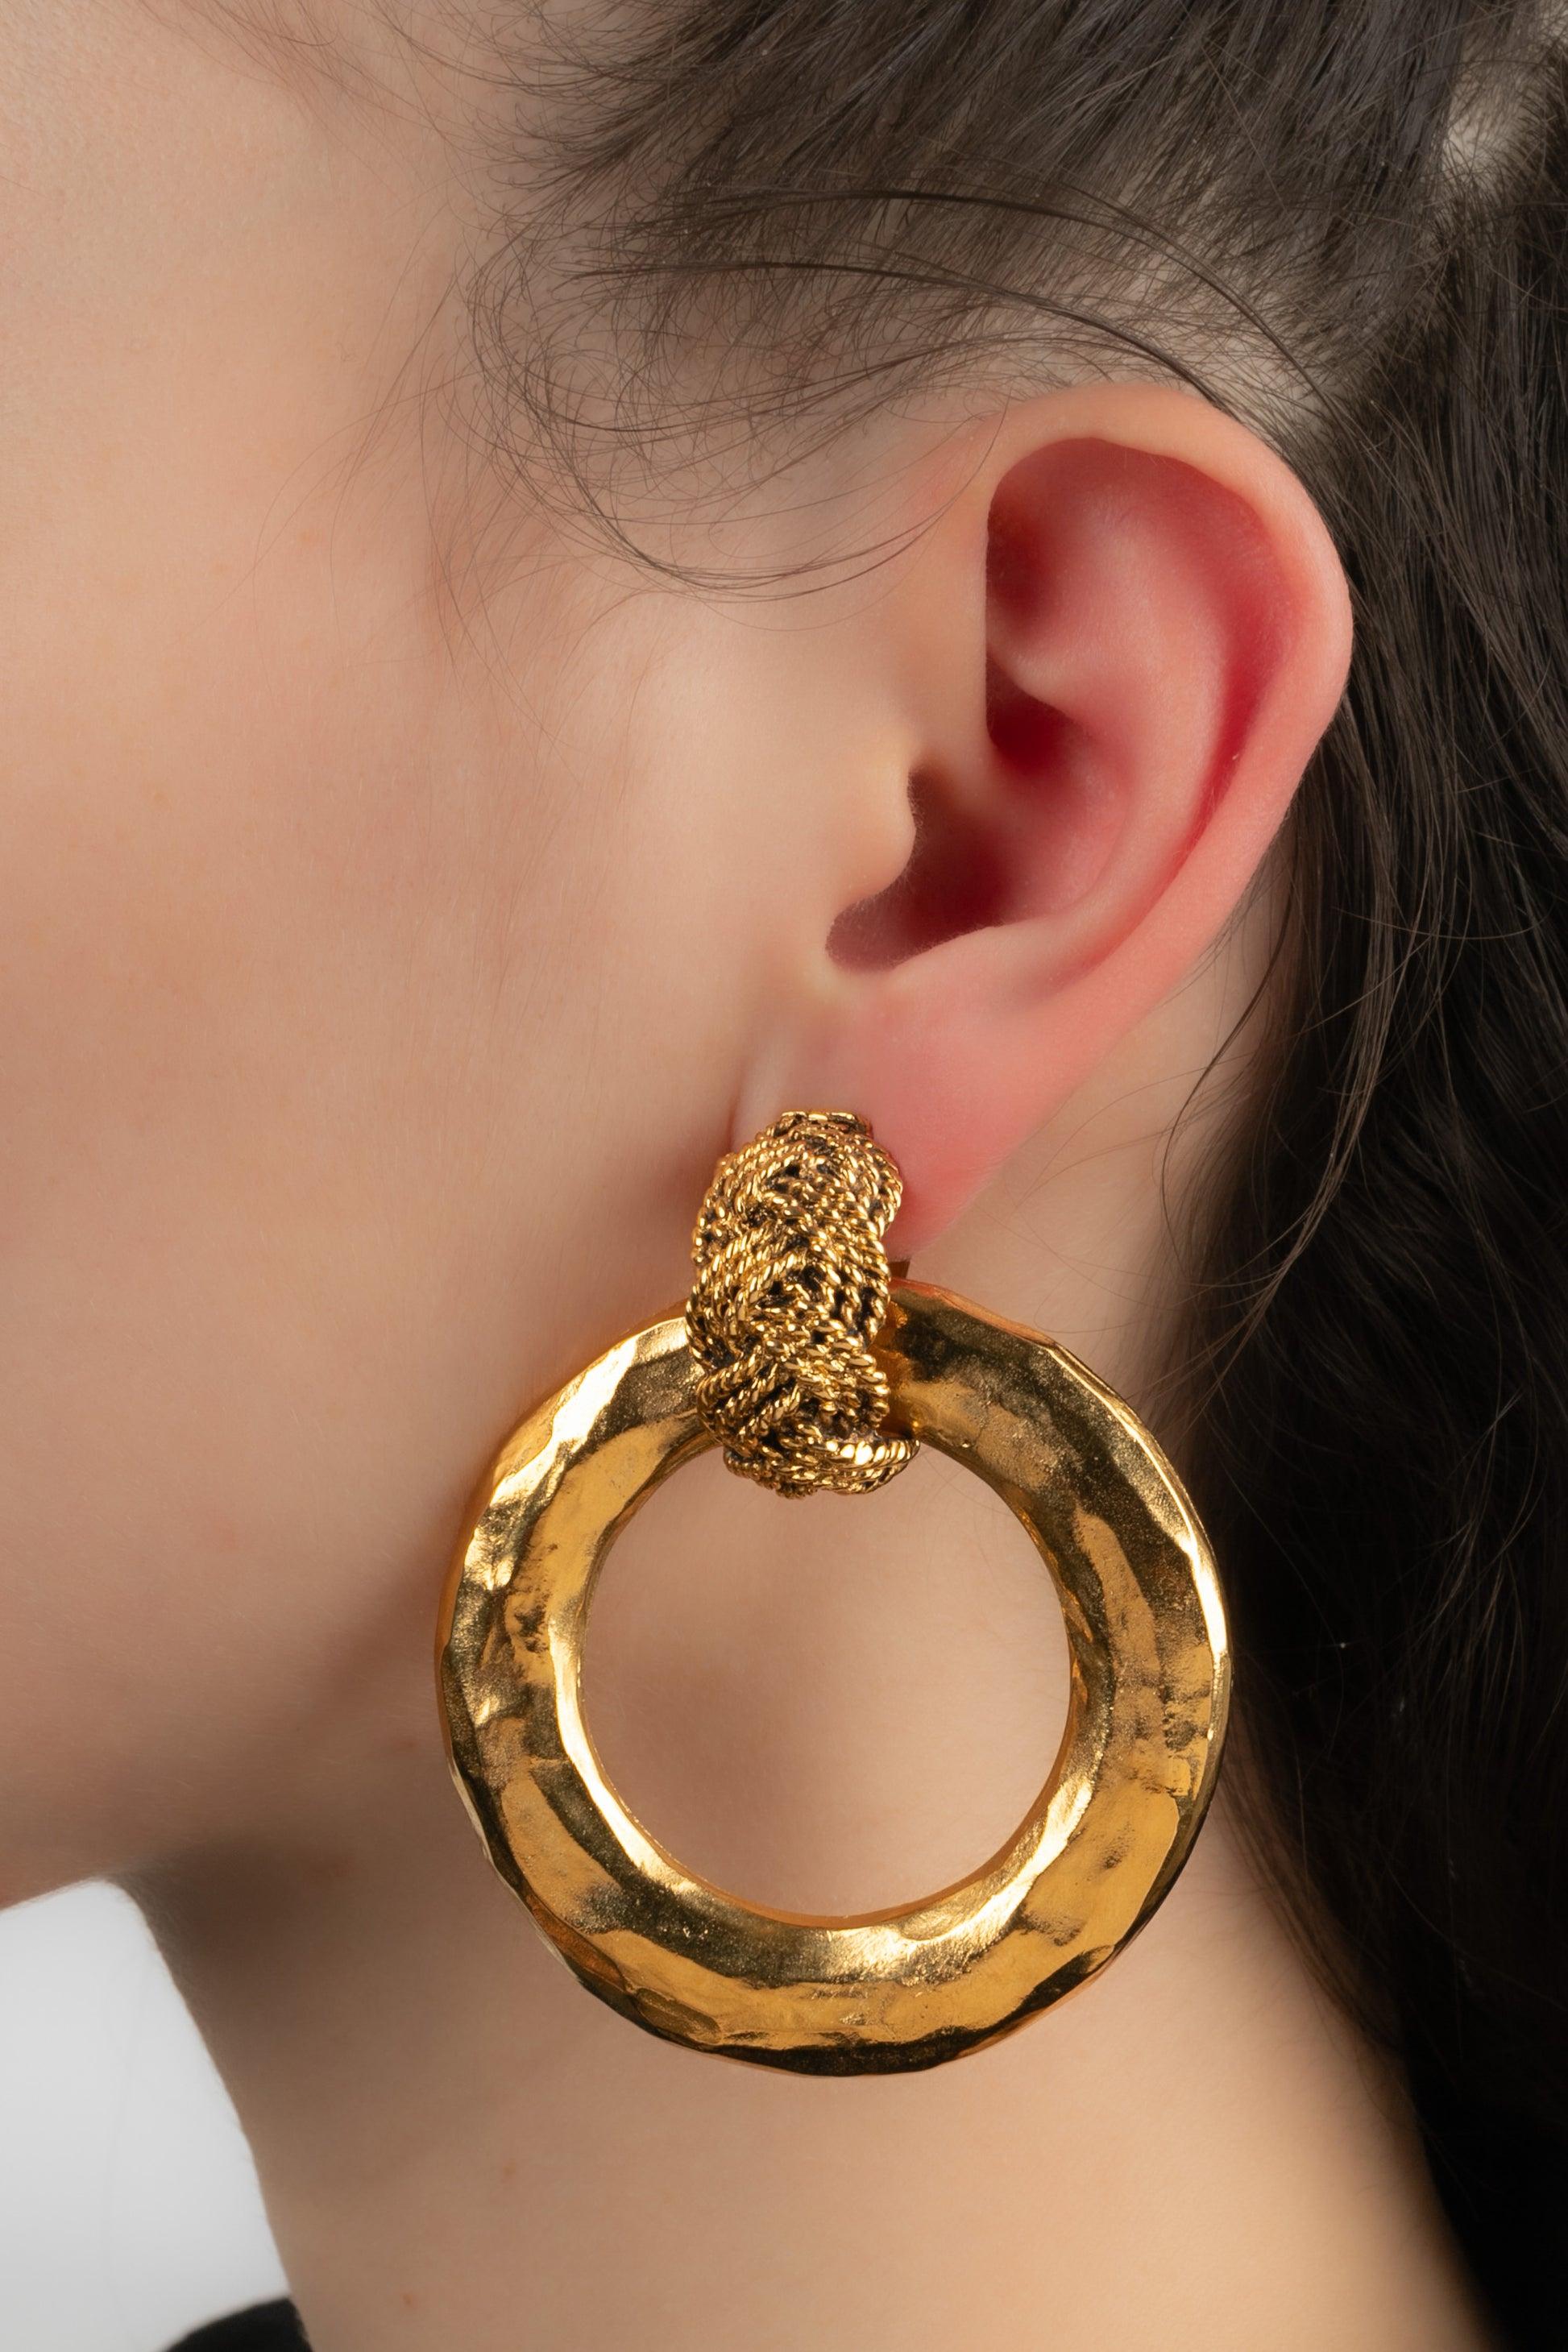 Chanel - (Made in France) Goldene Metallohrringe zum Anstecken. Schmuck aus den 1980er Jahren. Einer der Ohrringe ist übrigens signiert.

Zusätzliche Informationen:
Zustand: Sehr guter Zustand
Abmessungen: Länge: 6 cm
Zeitraum: 20.